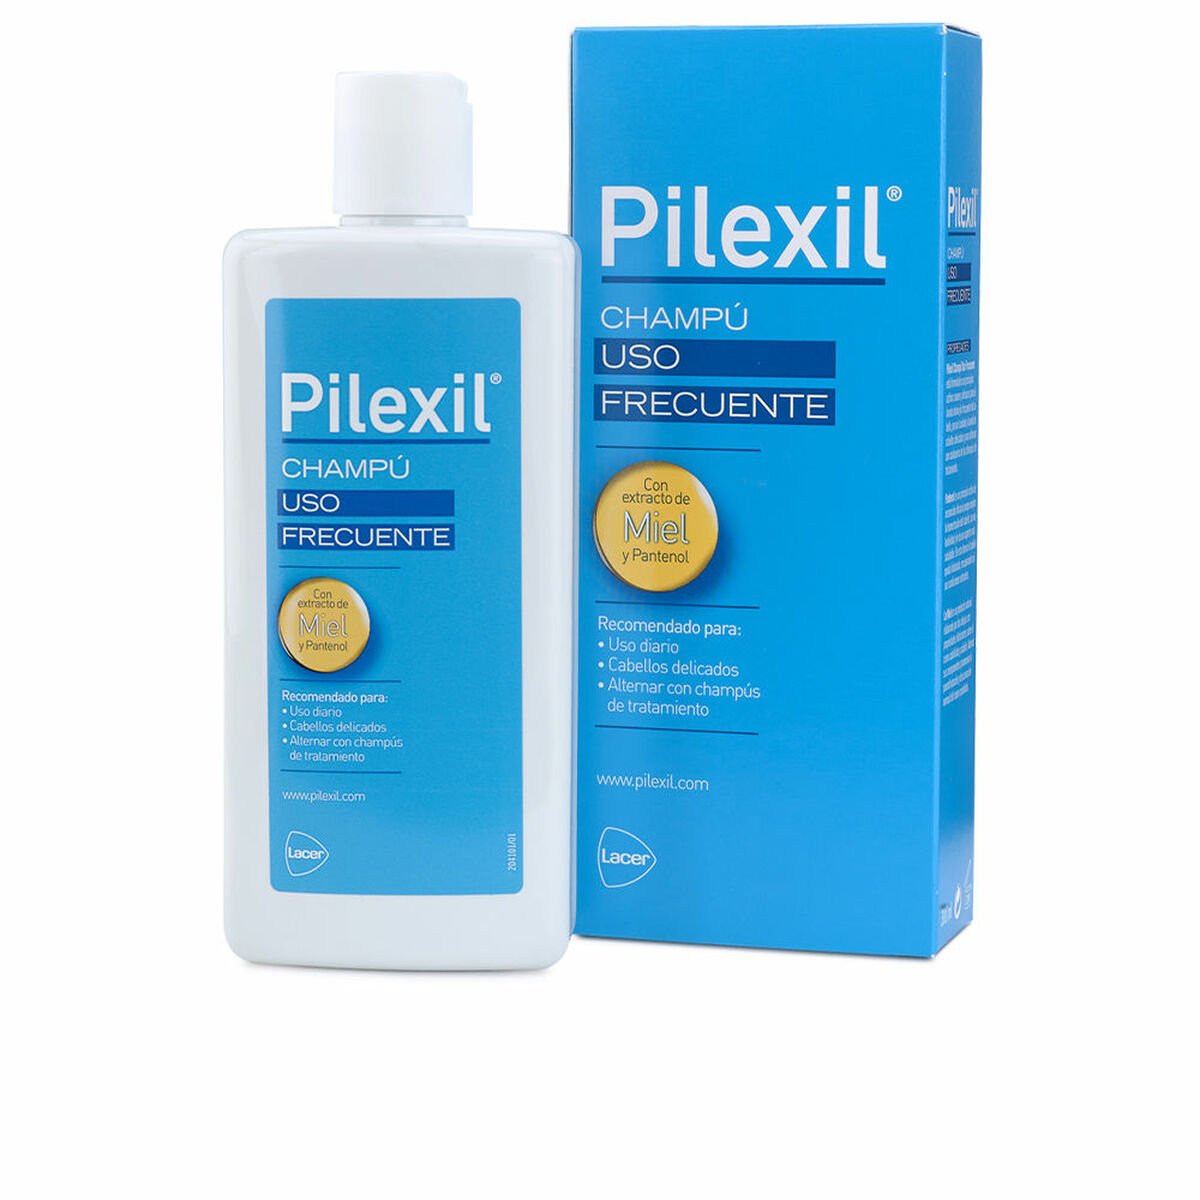 Dnevna uporaba šampona pileksila (300 ml)